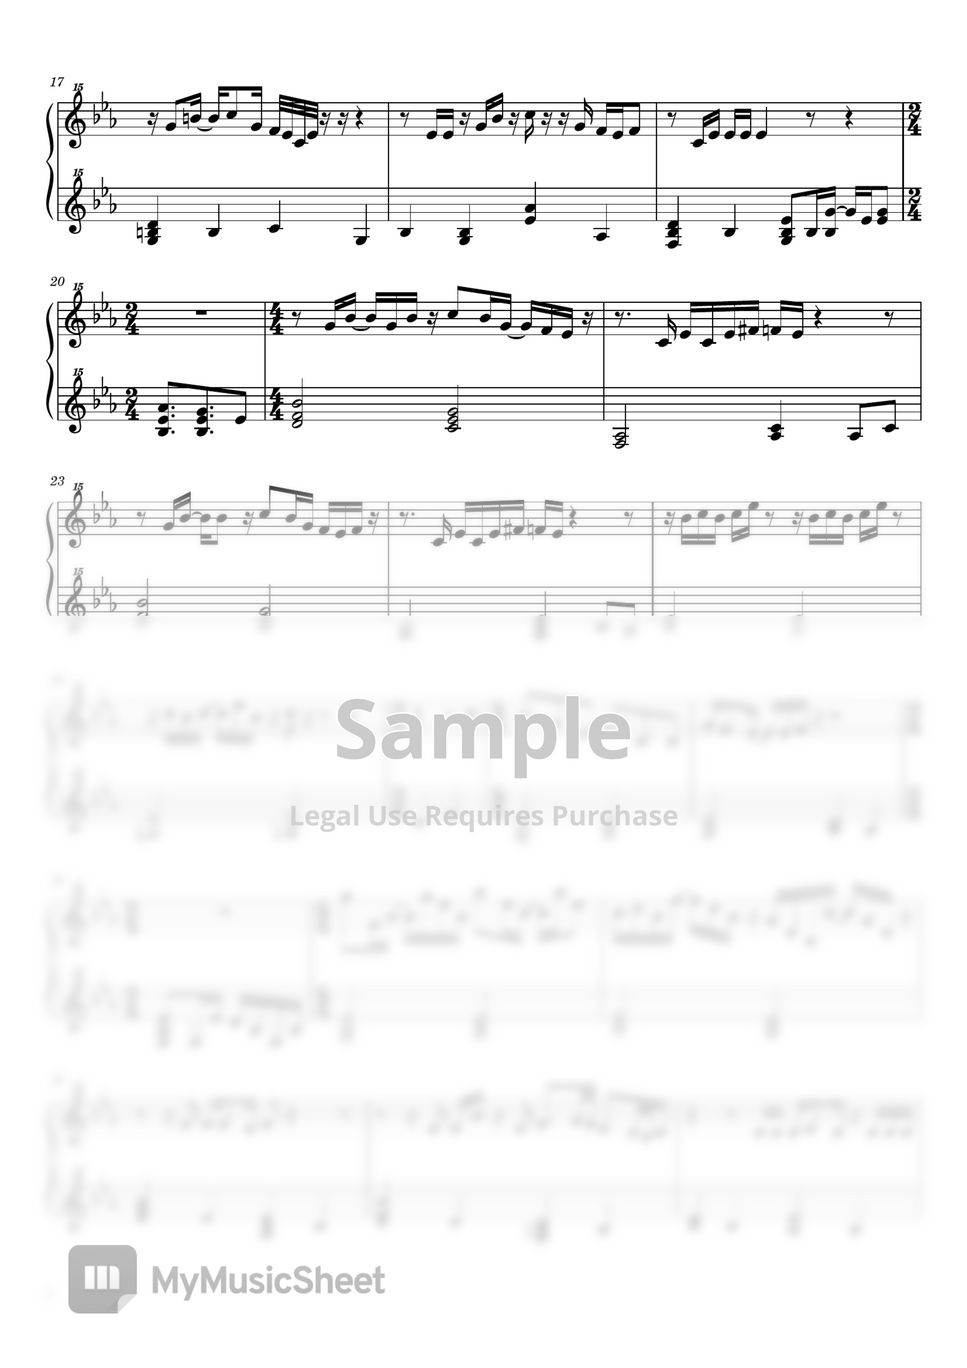 エルトン・ジョン - YOUR SONG (ピアノ / トイピアノ / 32鍵盤) by 川西三裕